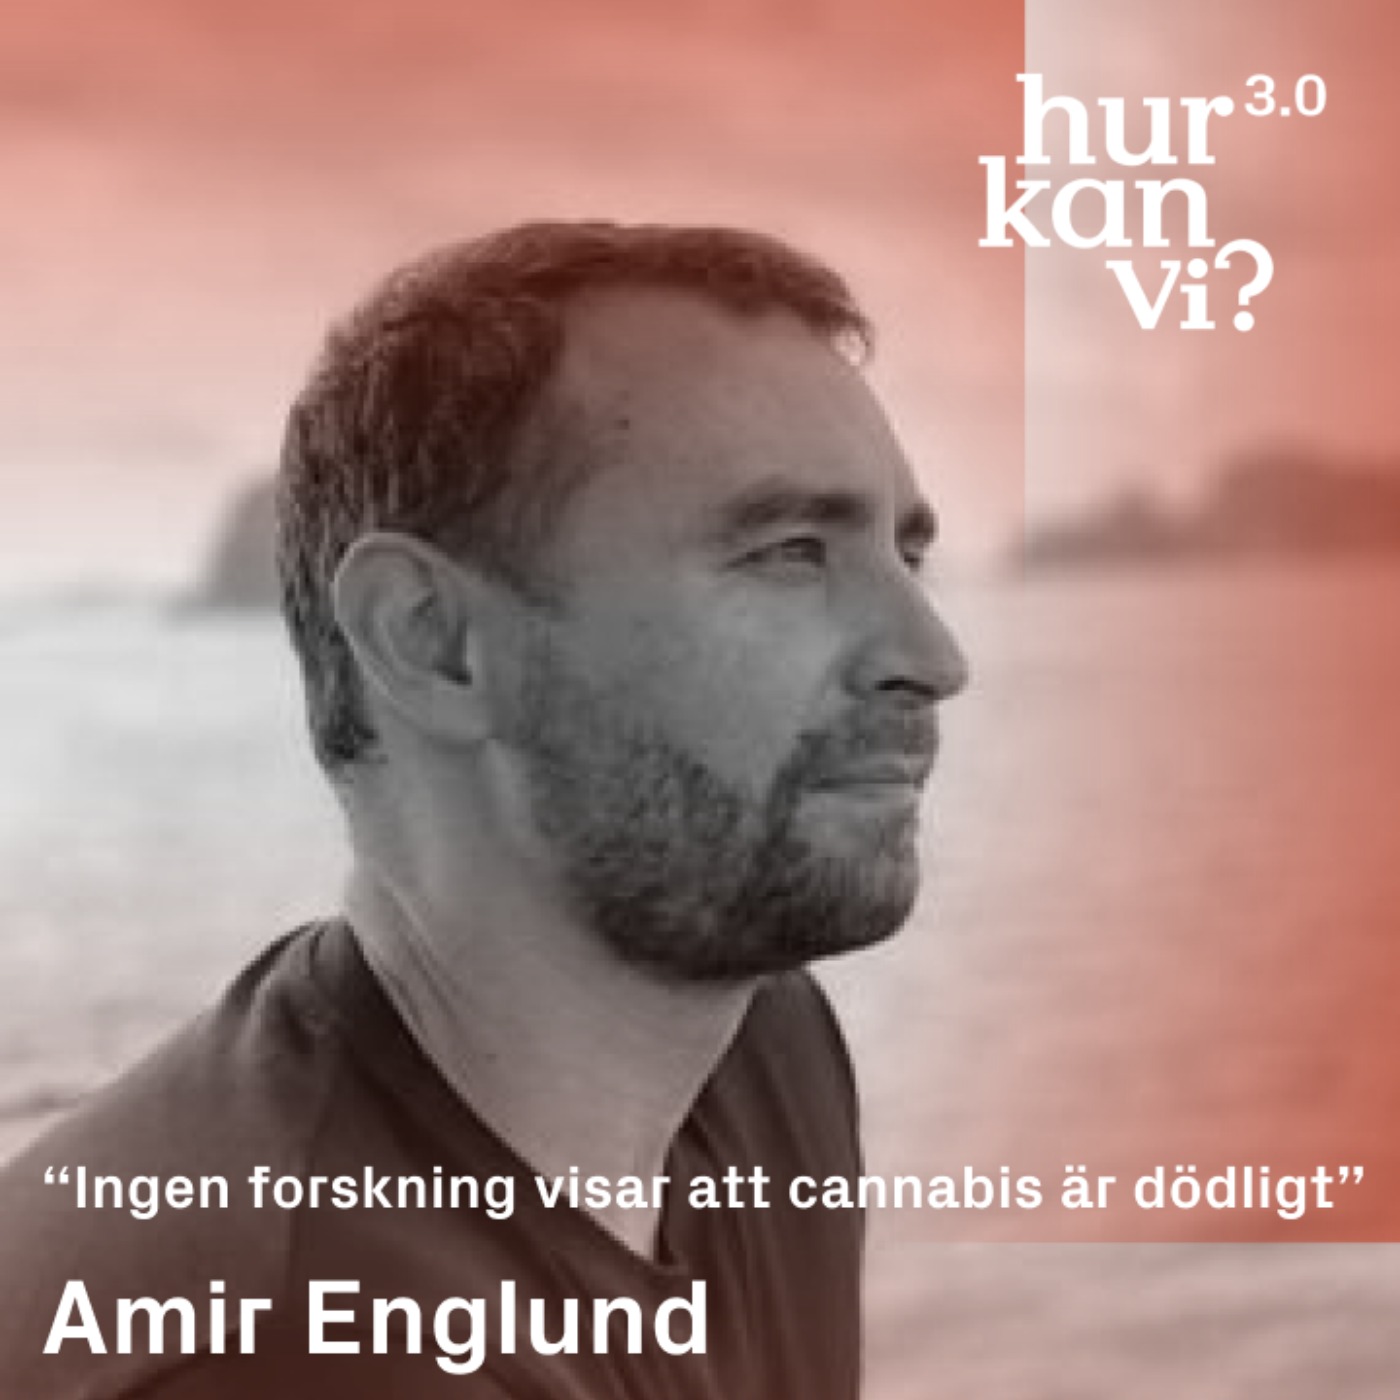 Amir Englund - “Ingen forskning visar att cannabis är dödligt”